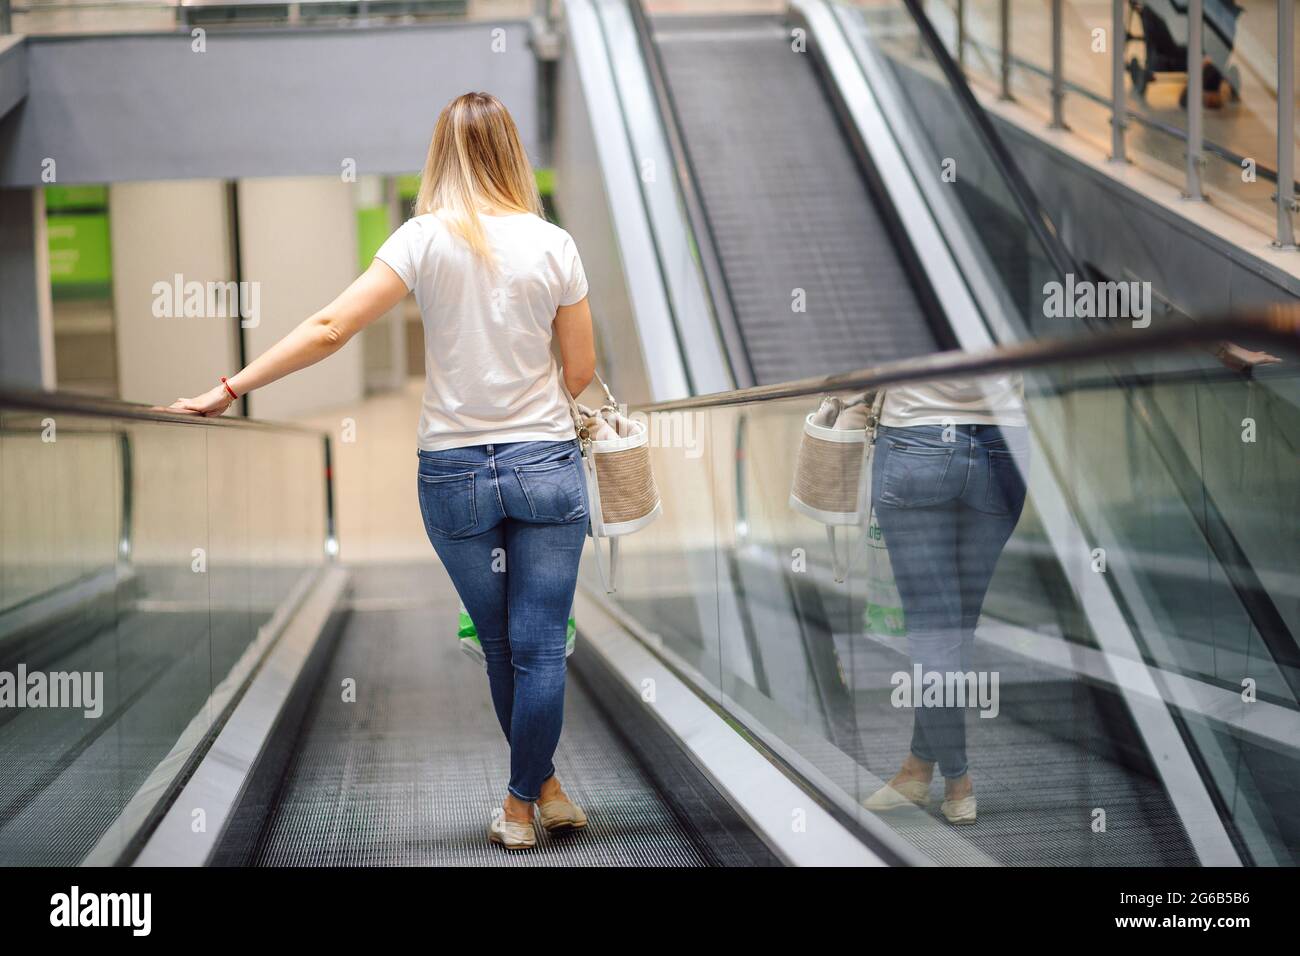 Junge Frau in weißem T-Shirt und Jeans auf Rolltreppe im Einkaufszentrum. Einkaufen und Vergnügen. Lifestyle. Alltag in der Stadt. Waren und Verbrauch Stockfoto